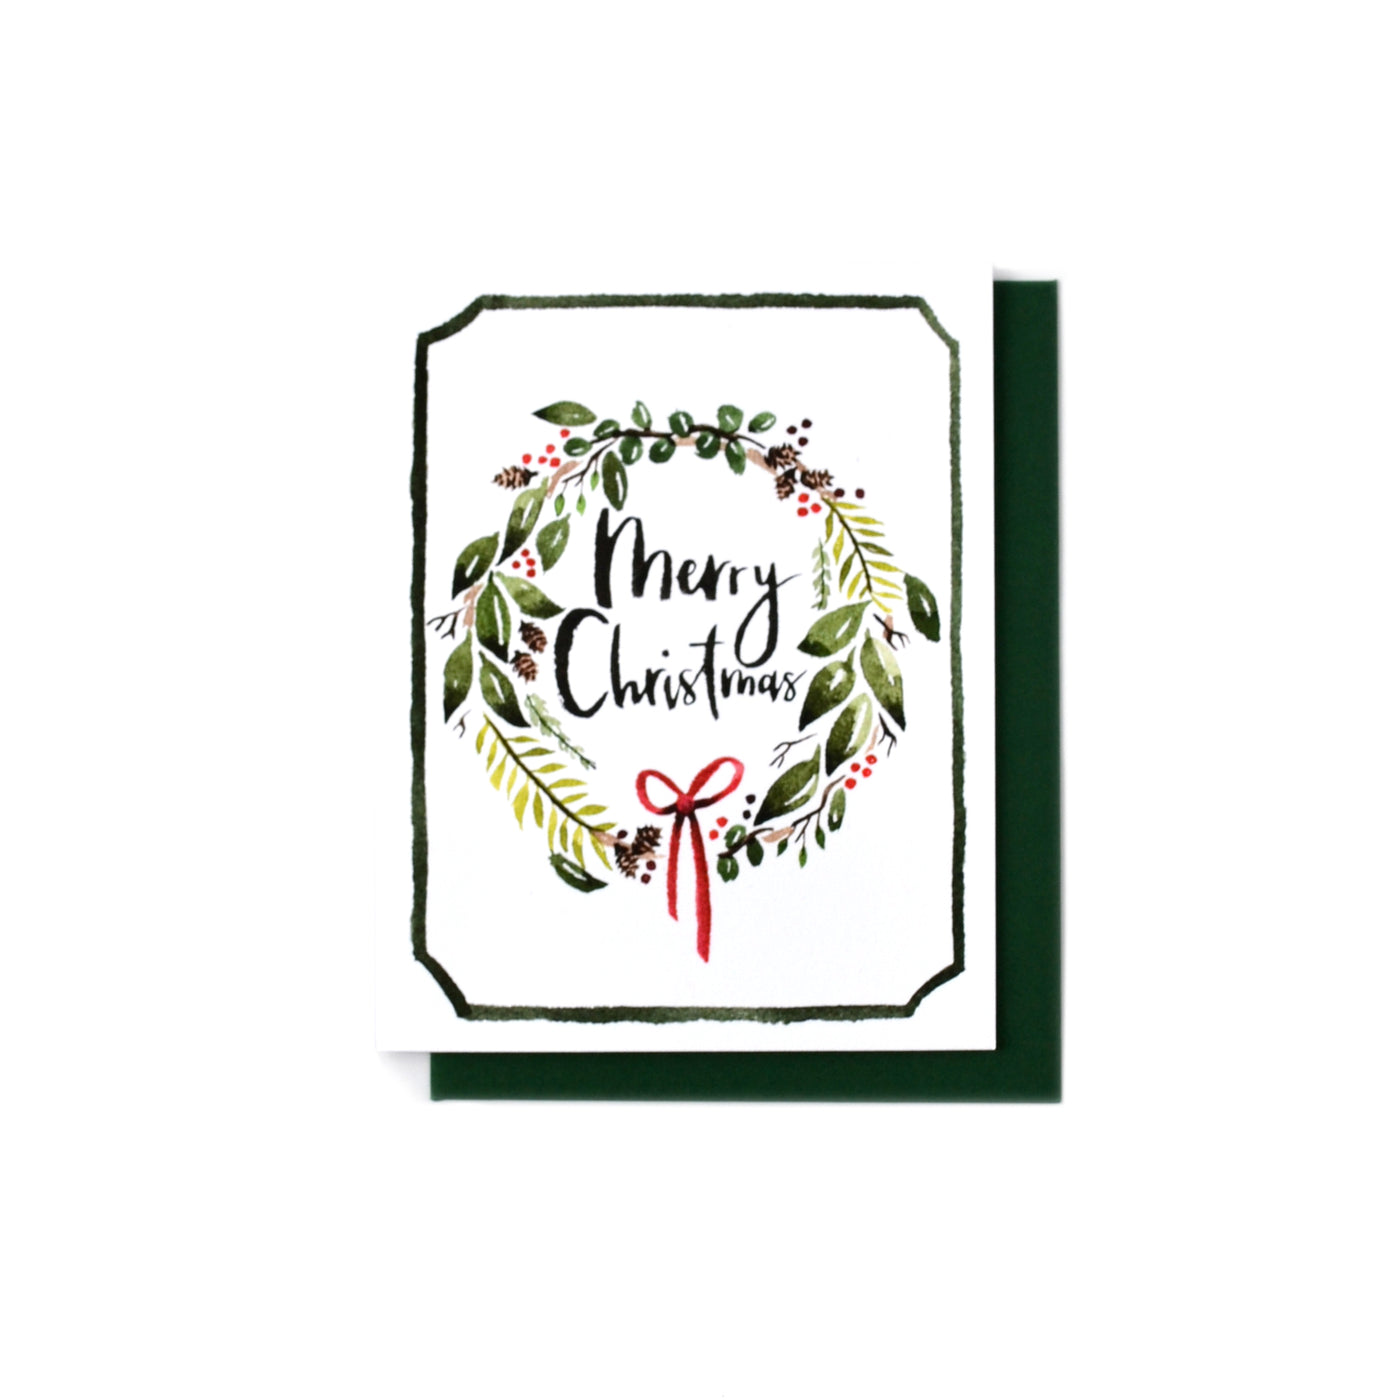 Merry Christmas wreath card